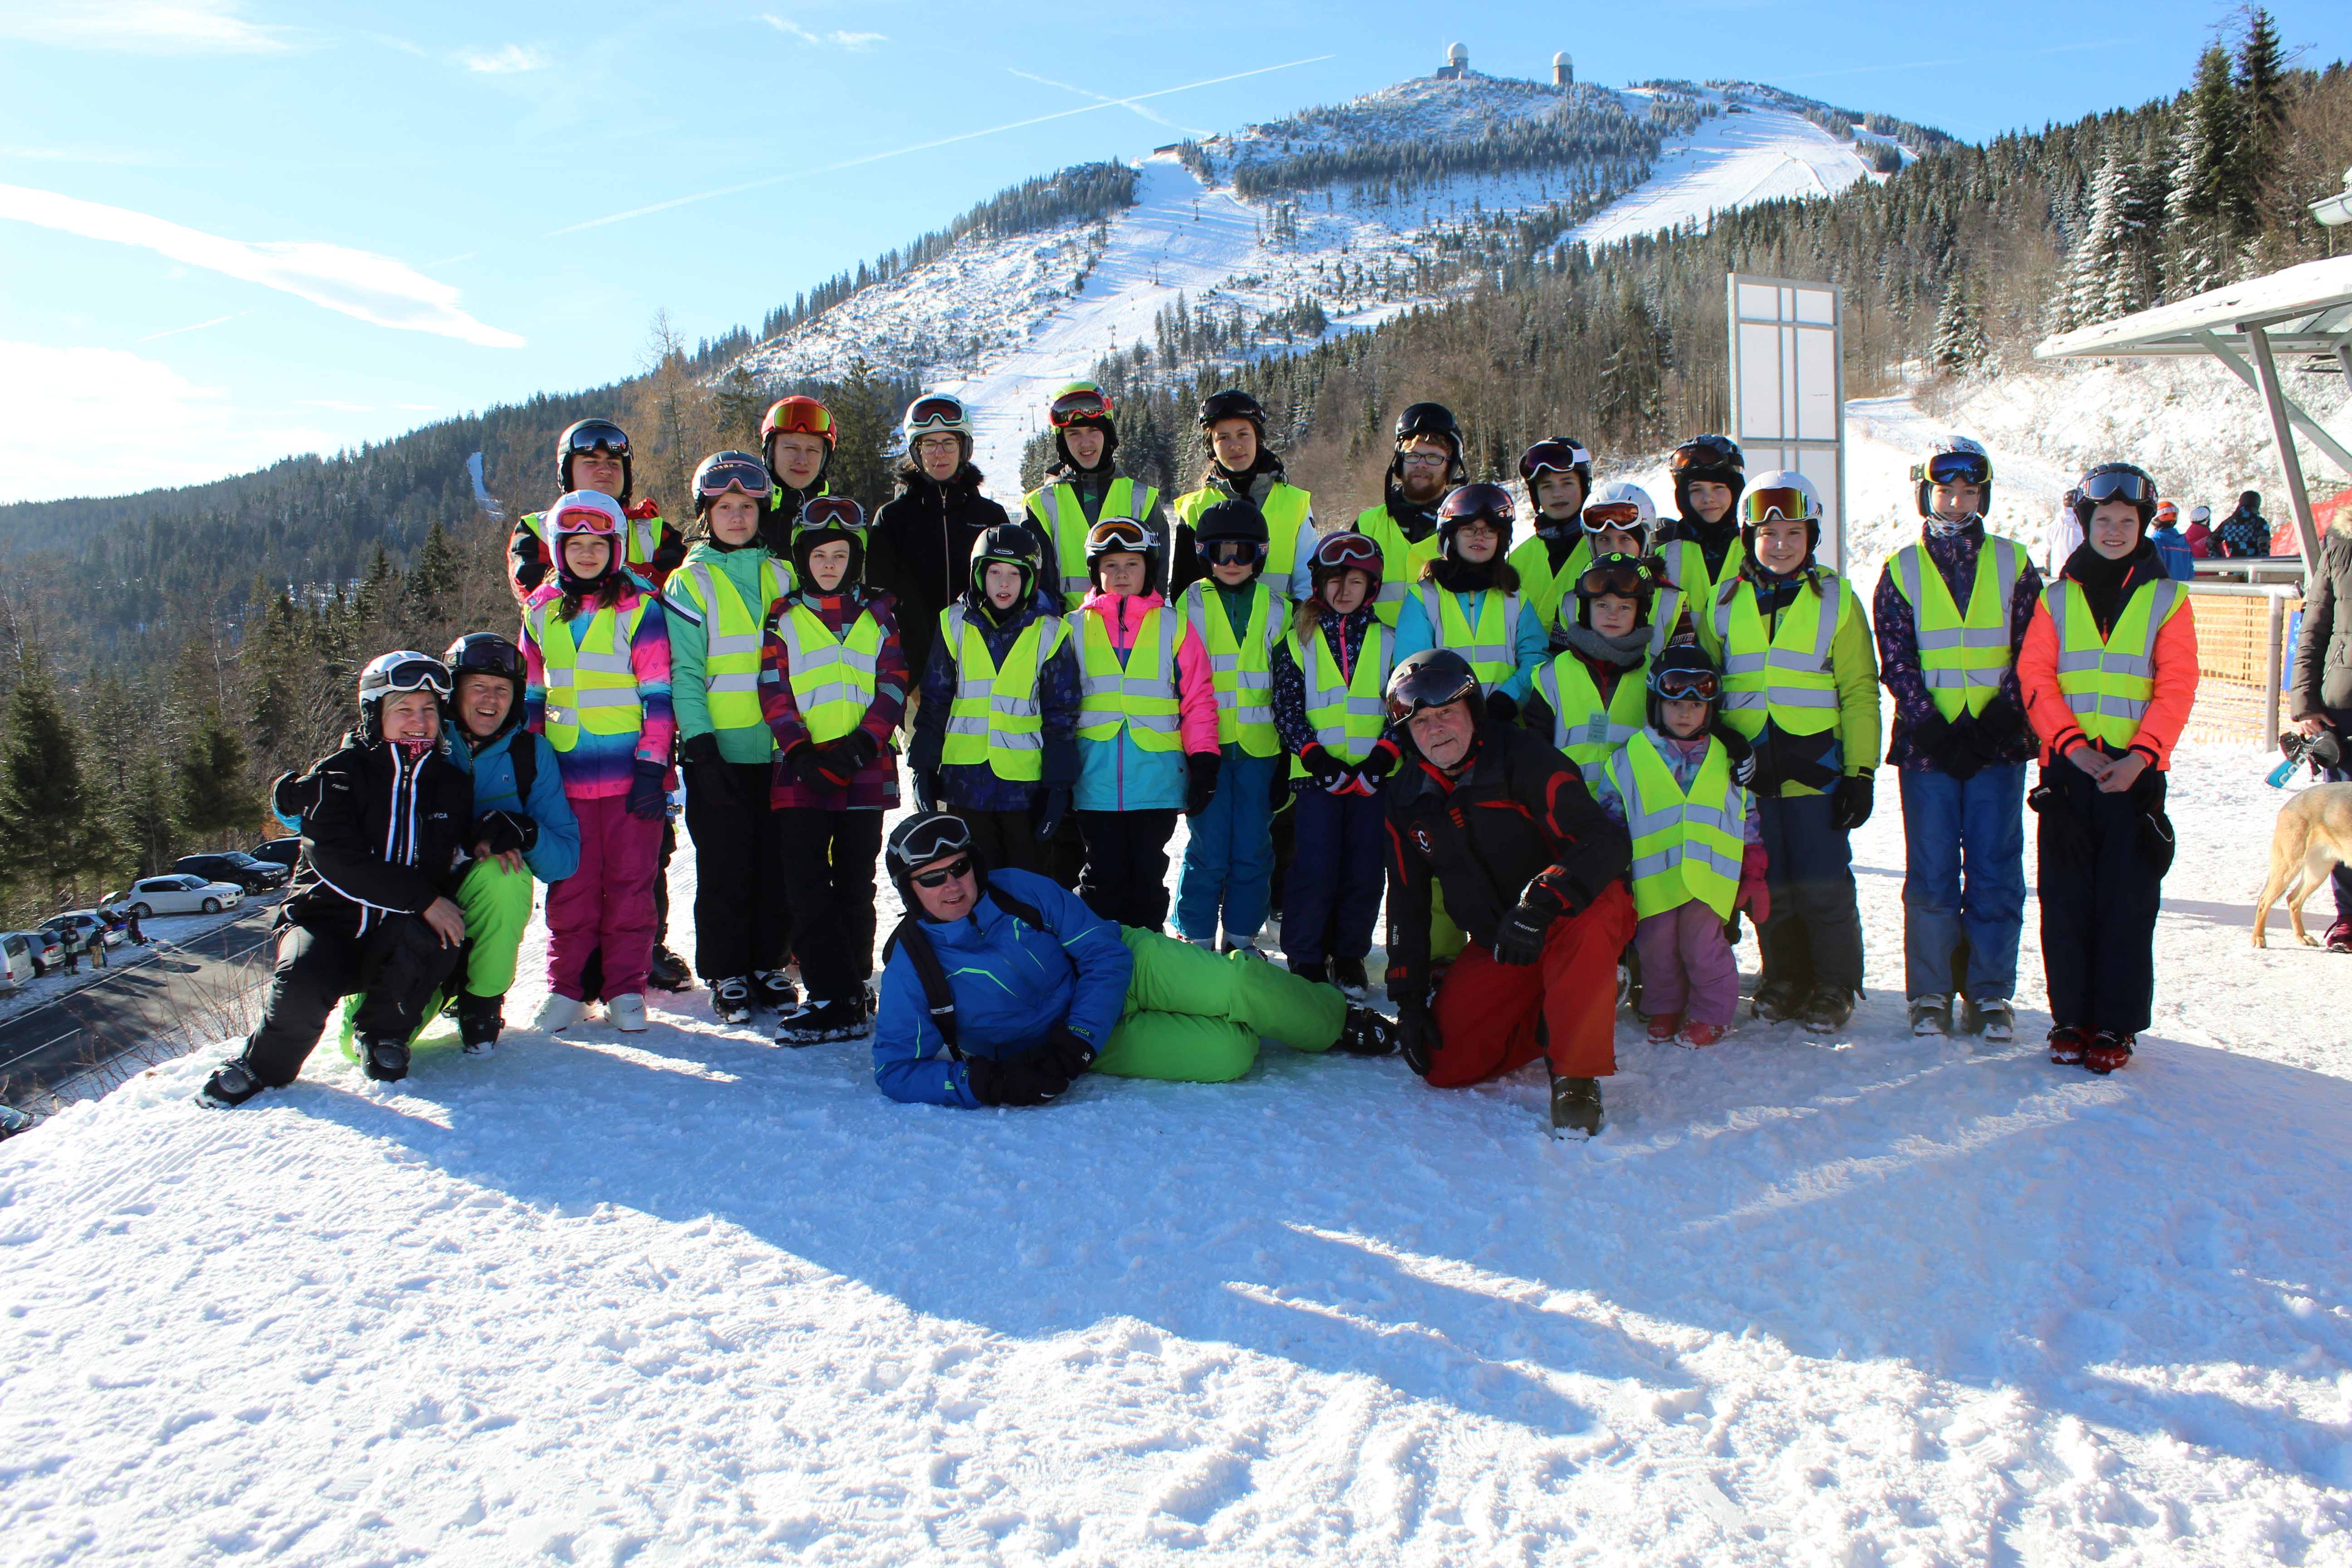 Alle Teilnehmer*innen des Skikurses zusammen mit den Skilehrer*innen und Betreuer*innen bei blauem Himmel im Schnee. 